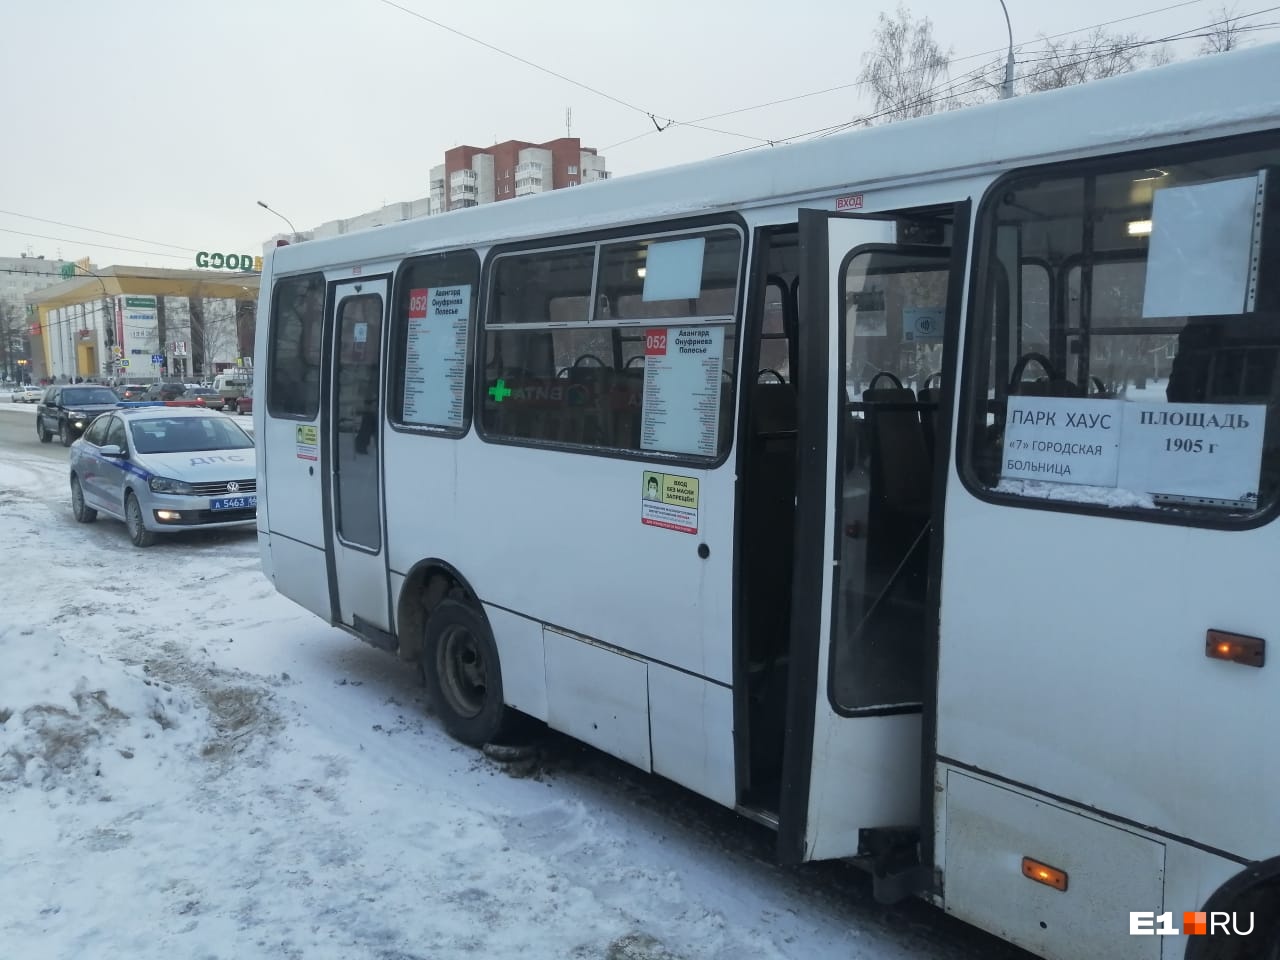 Юную екатеринбурженку увезли в больницу после падения в автобусе